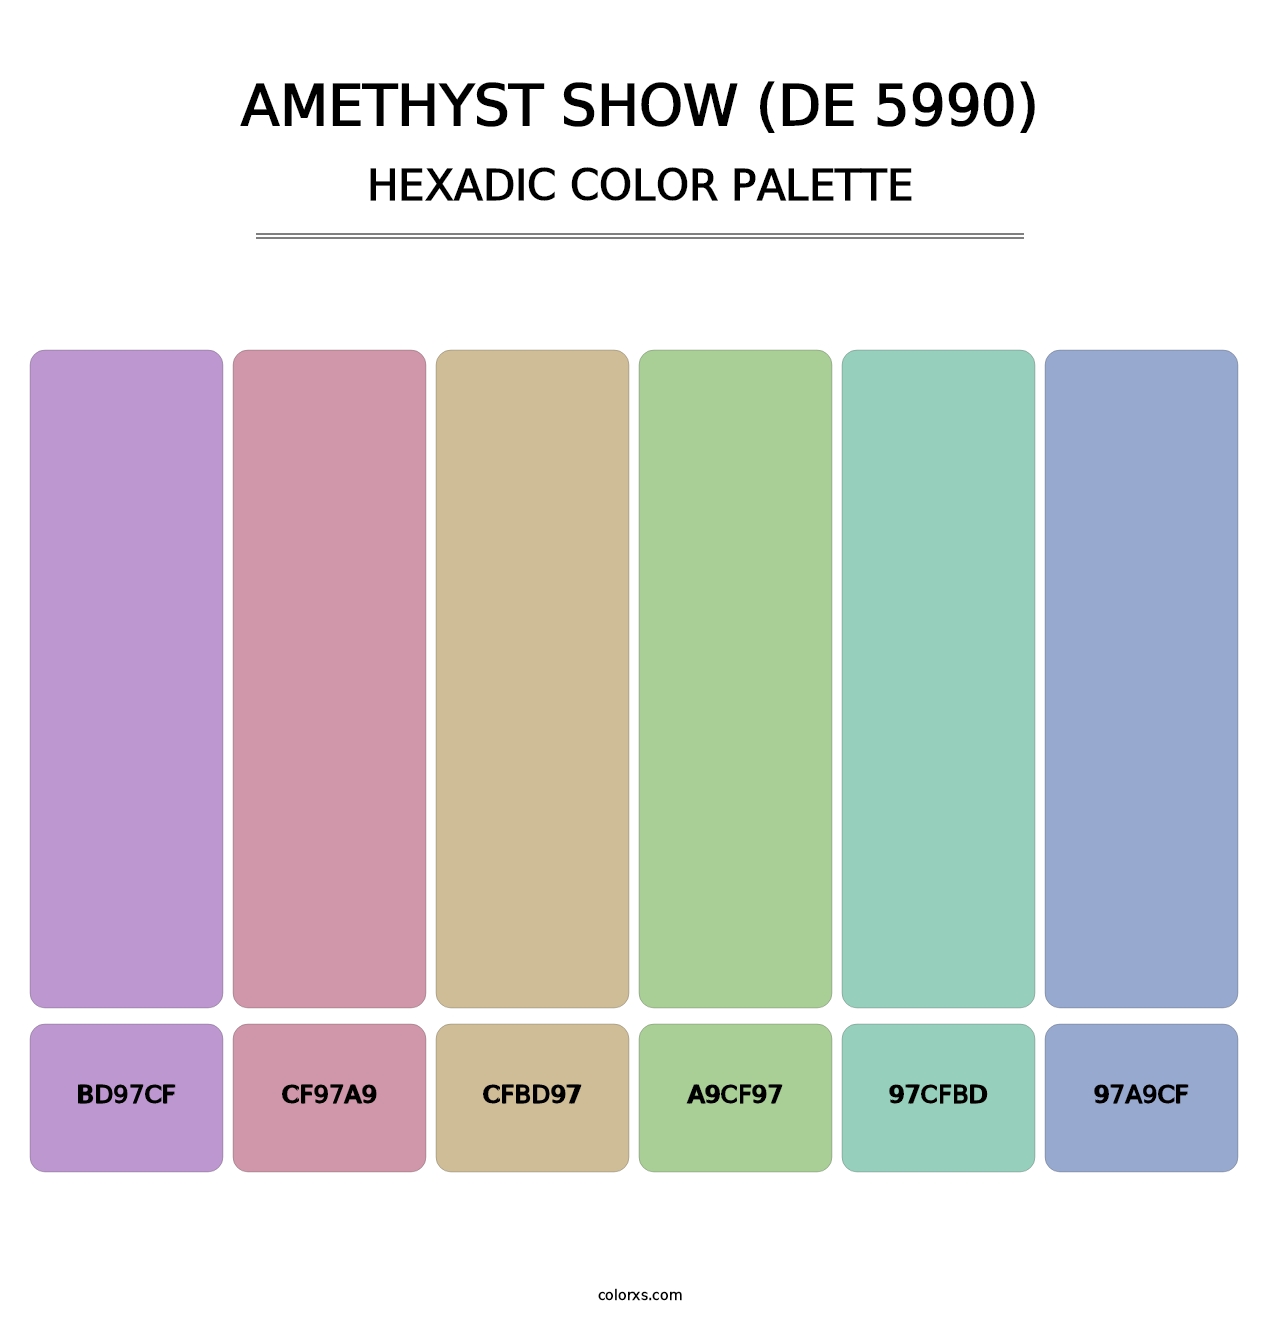 Amethyst Show (DE 5990) - Hexadic Color Palette